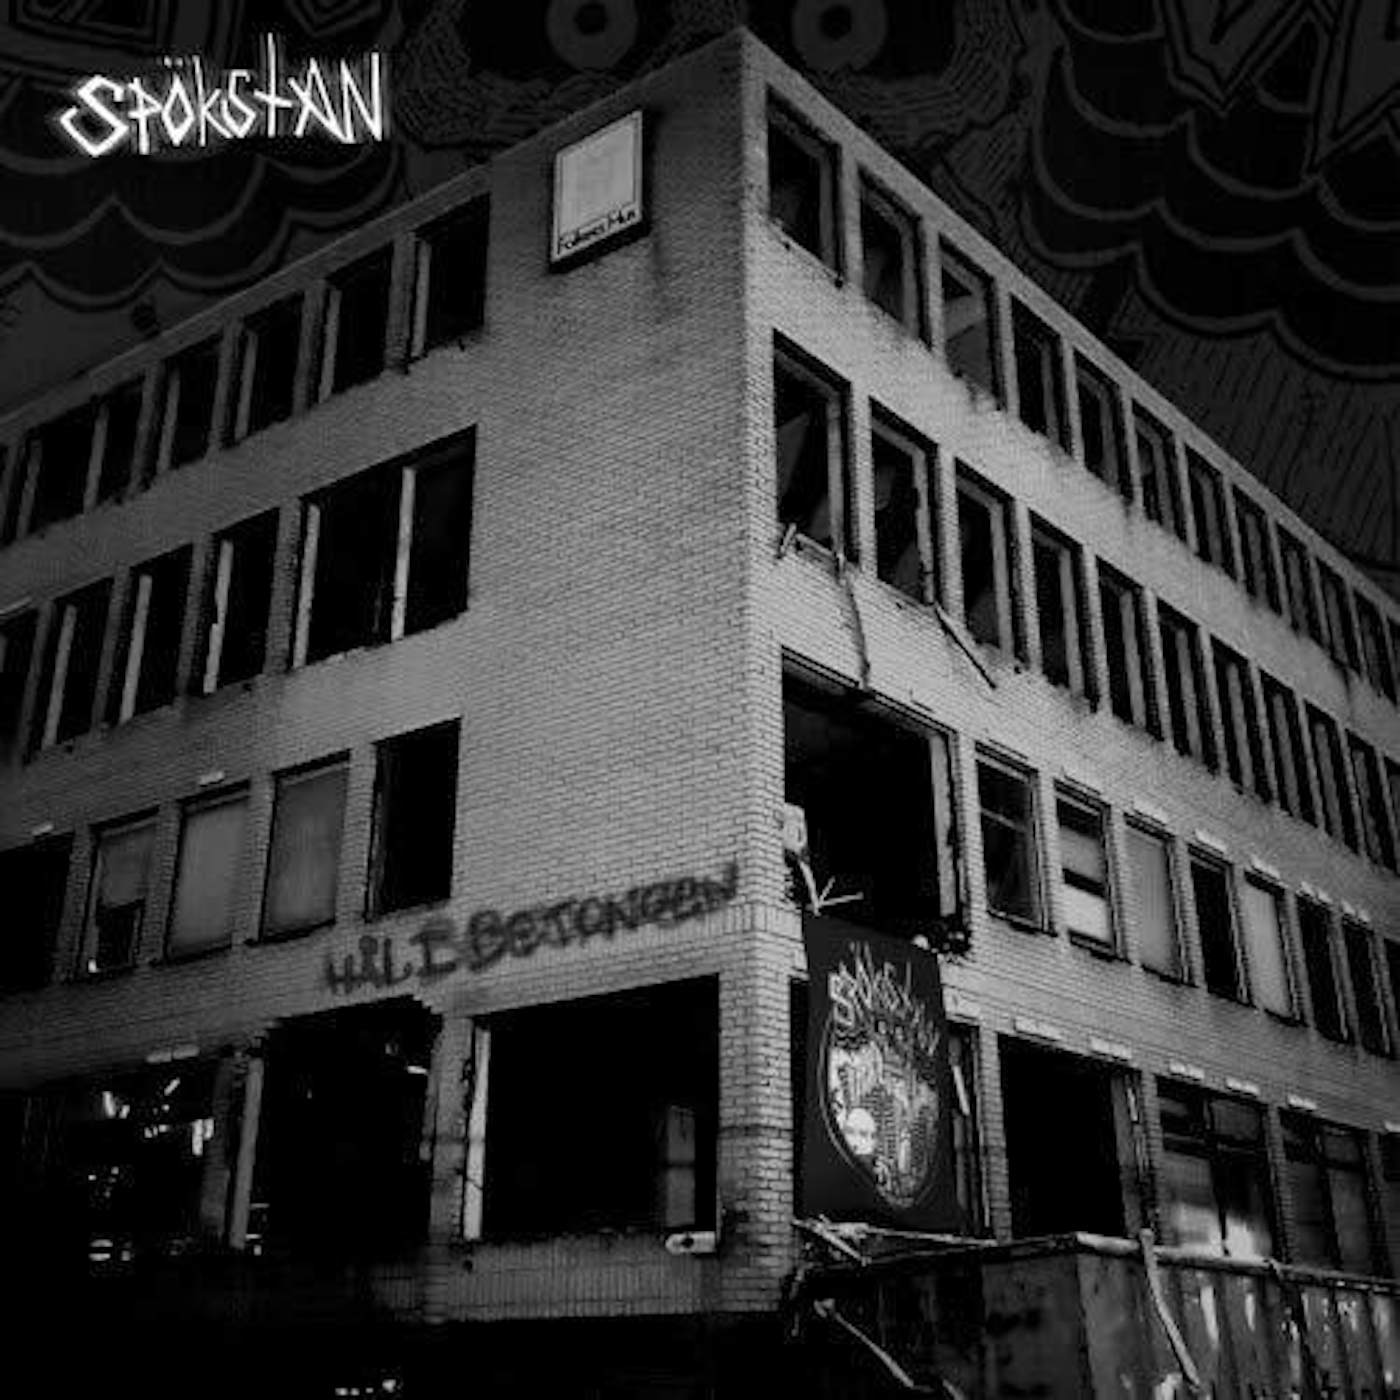 Spökstan HAL I BETONGEN Vinyl Record